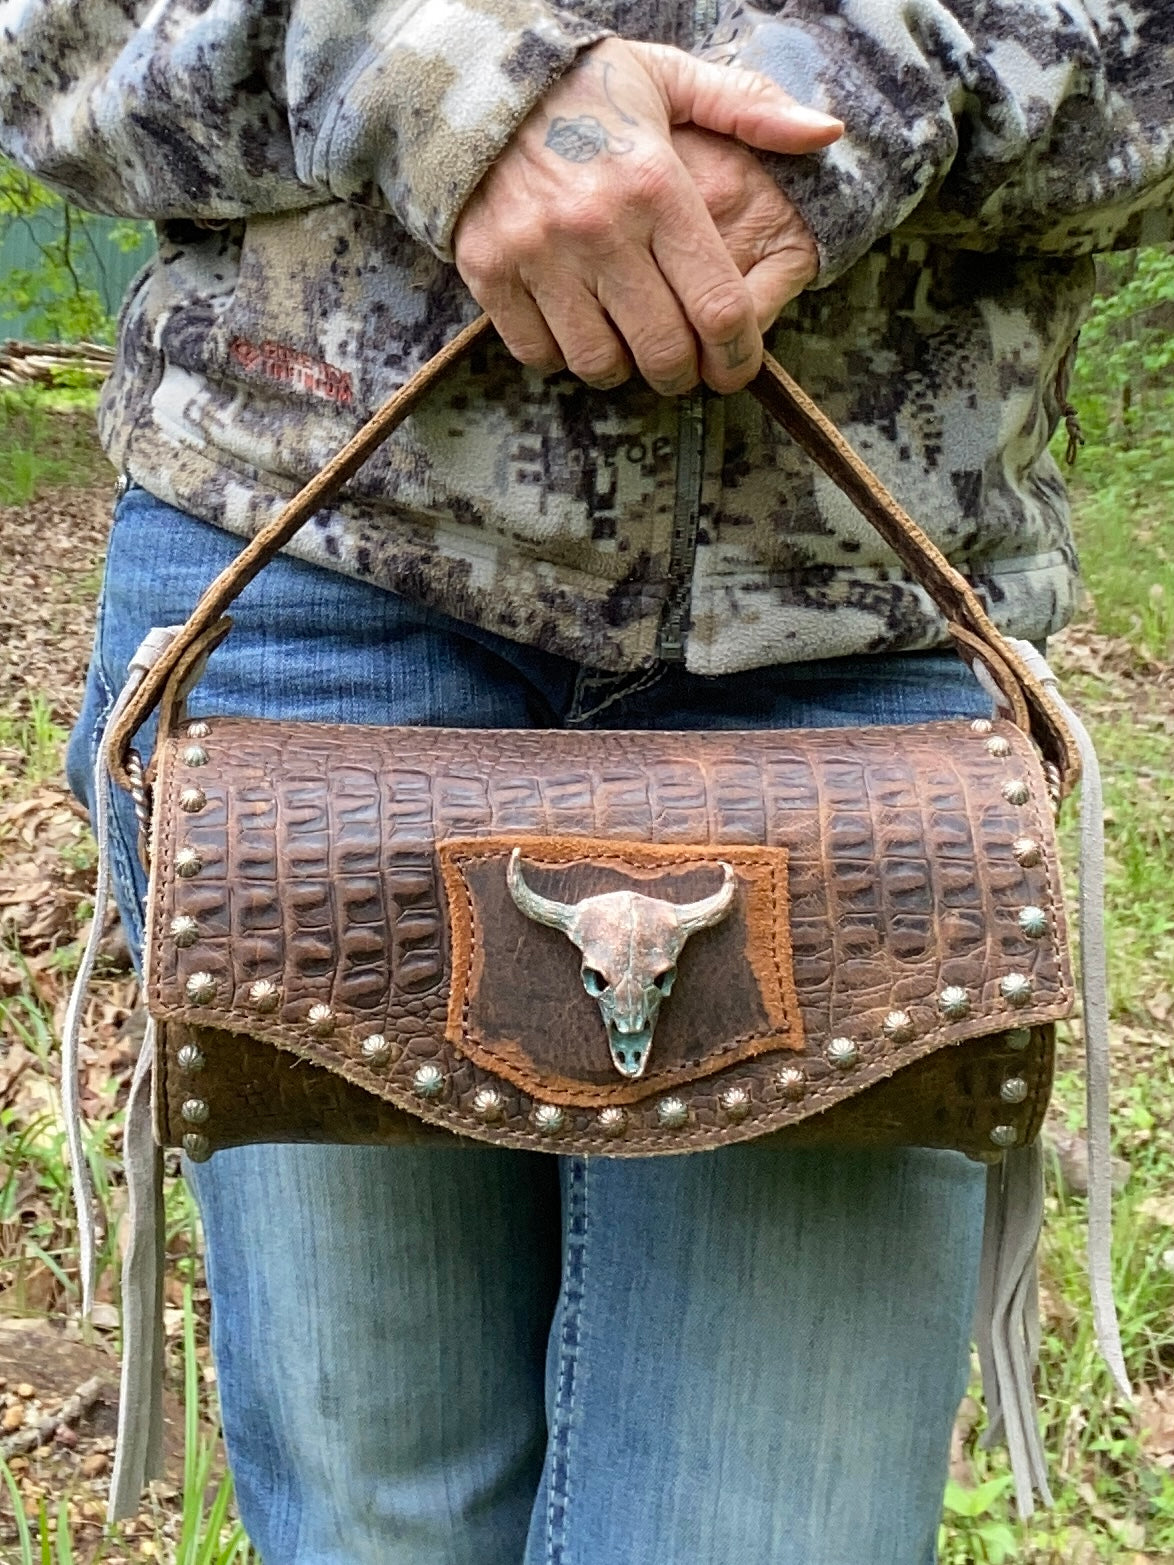 Outlaw barrel purse